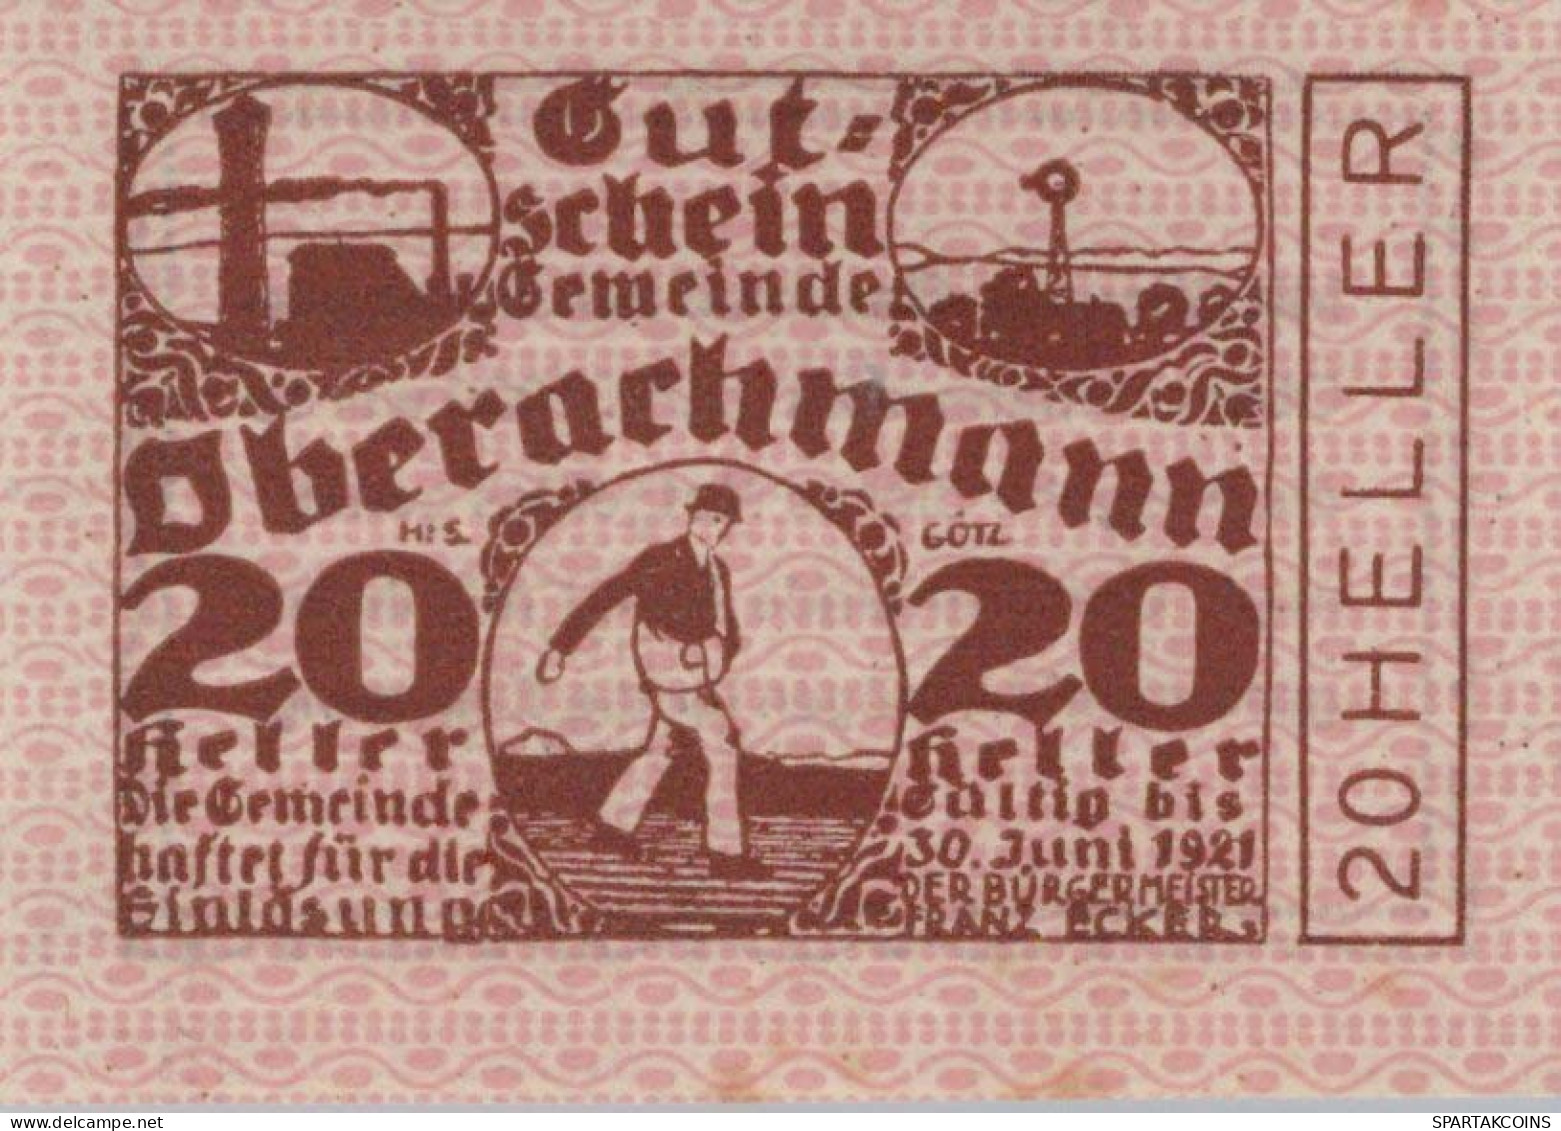 20 HELLER 1920 Stadt OBERACHMANN Oberösterreich Österreich Notgeld #PE547 - Lokale Ausgaben